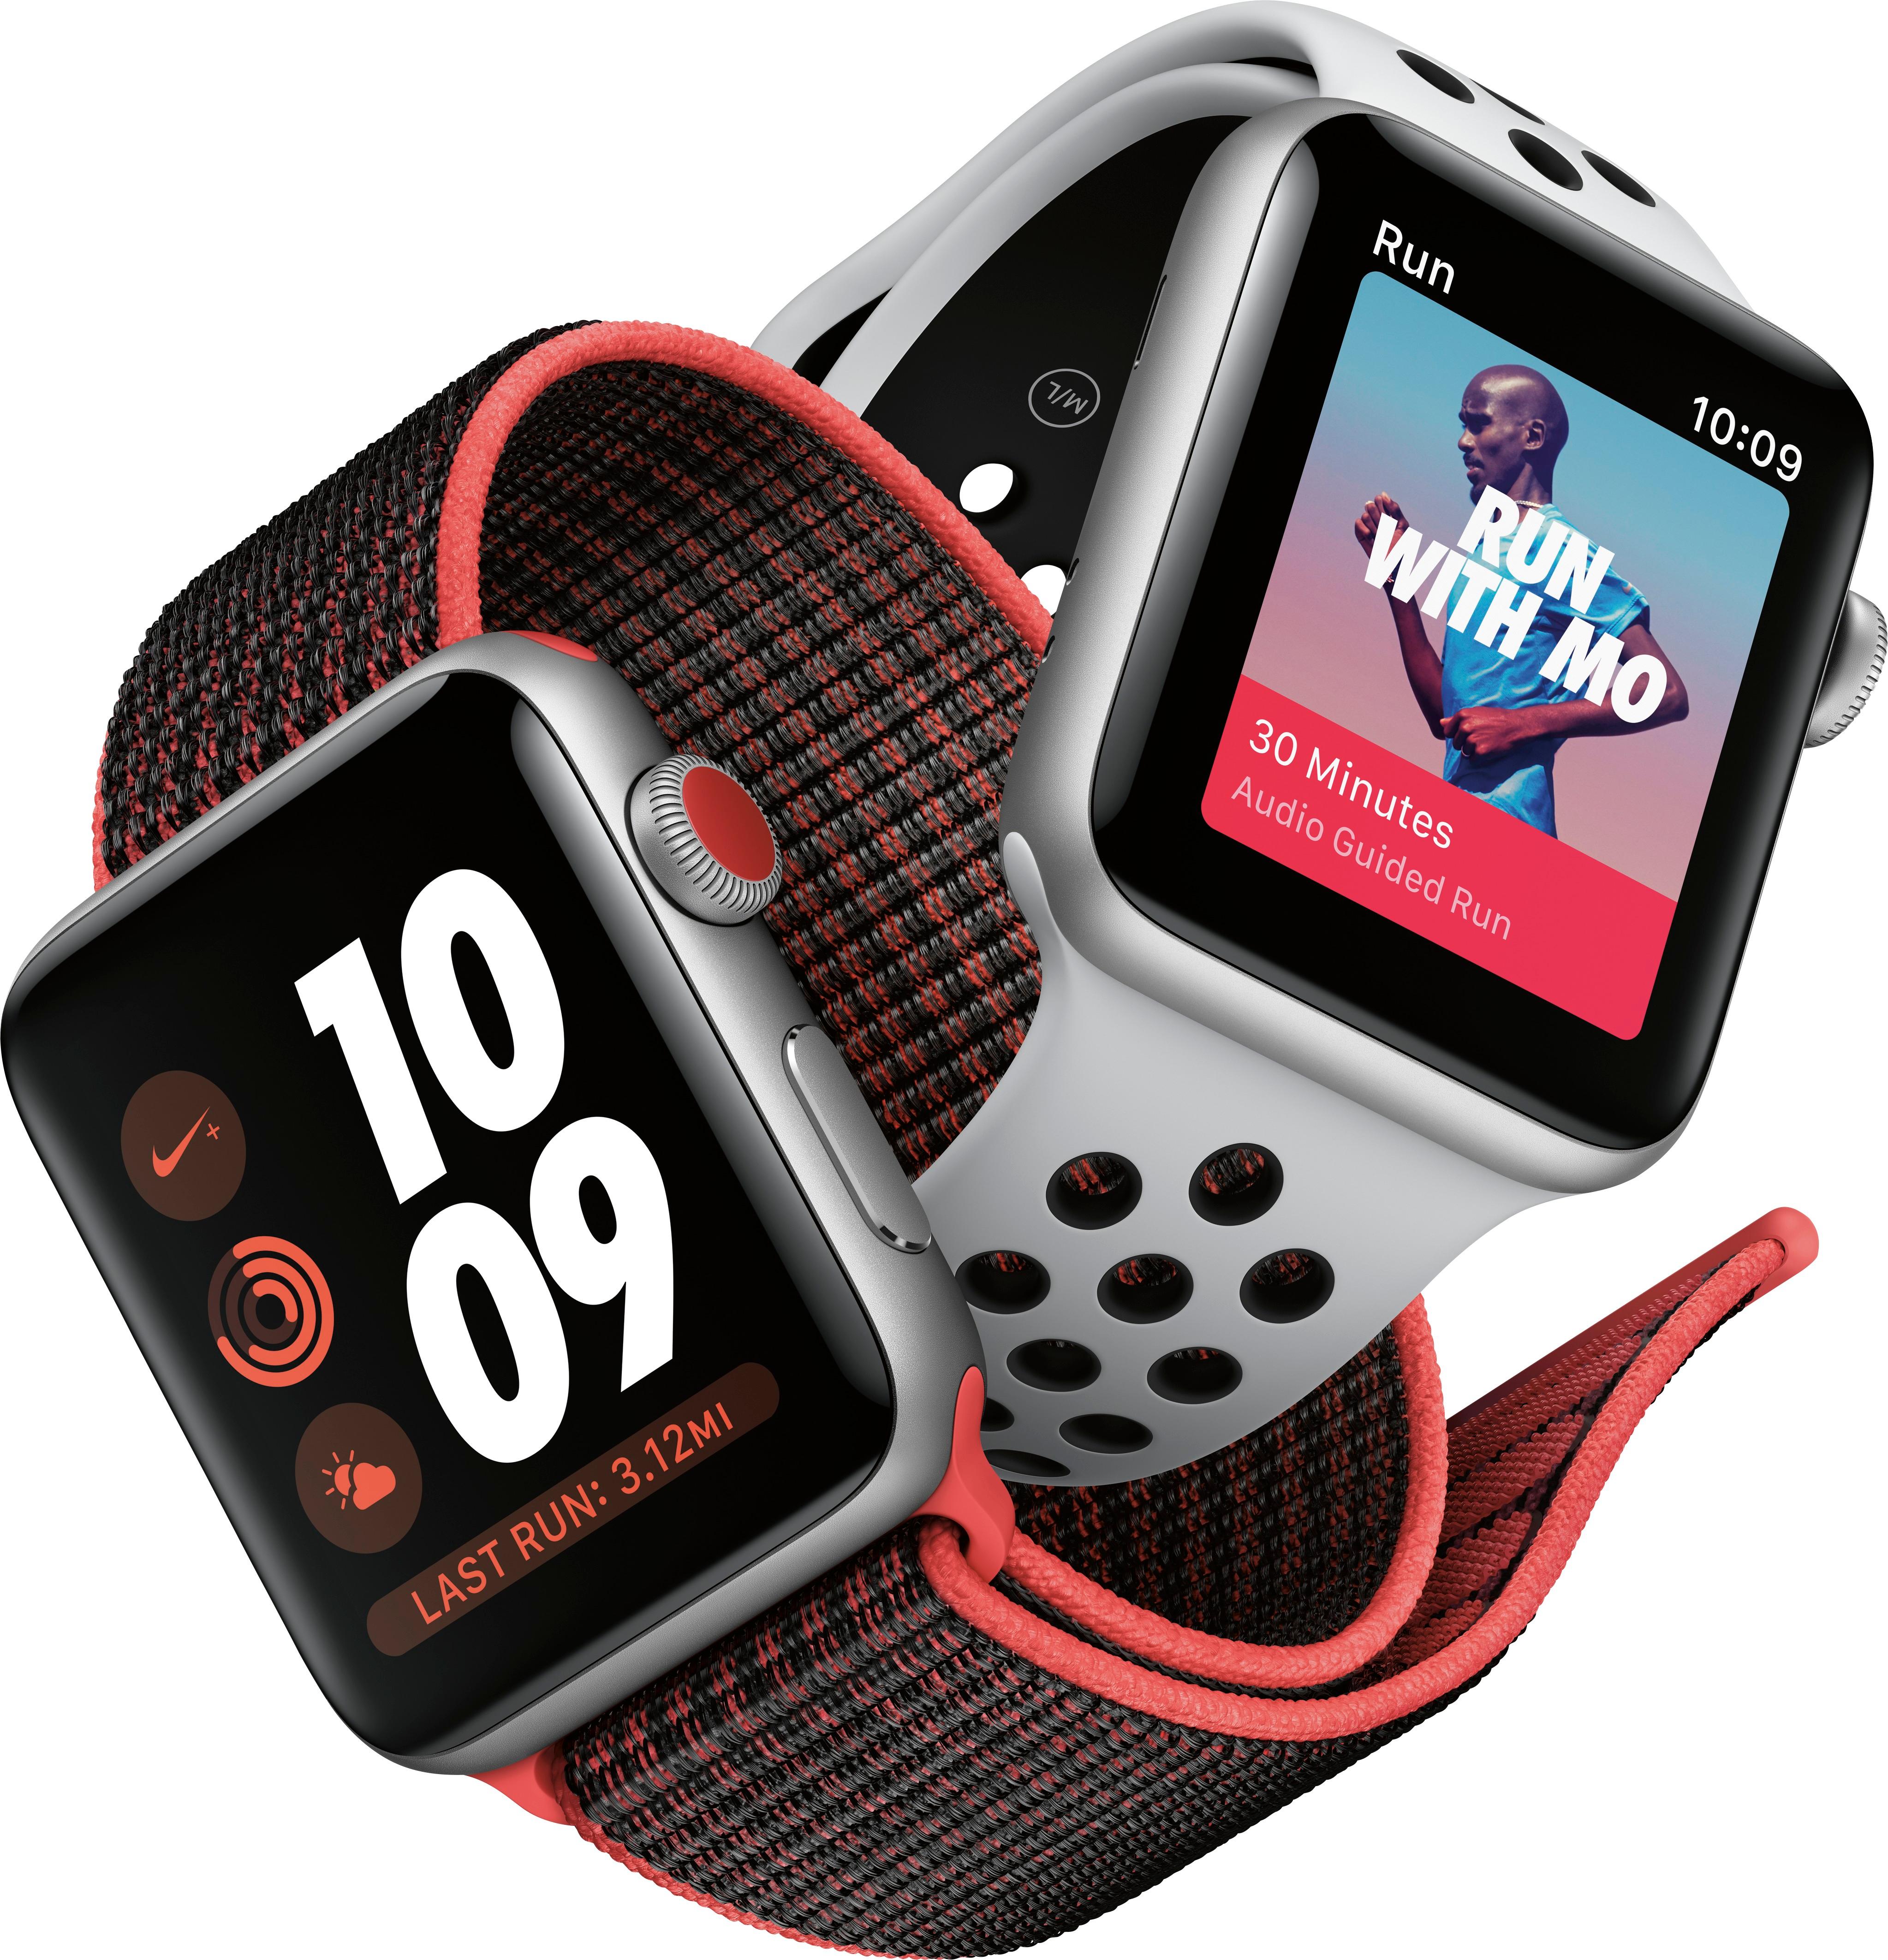 ボタニカル ミディアムベール Apple Watch 3 アップルウォッチNike GPS ...